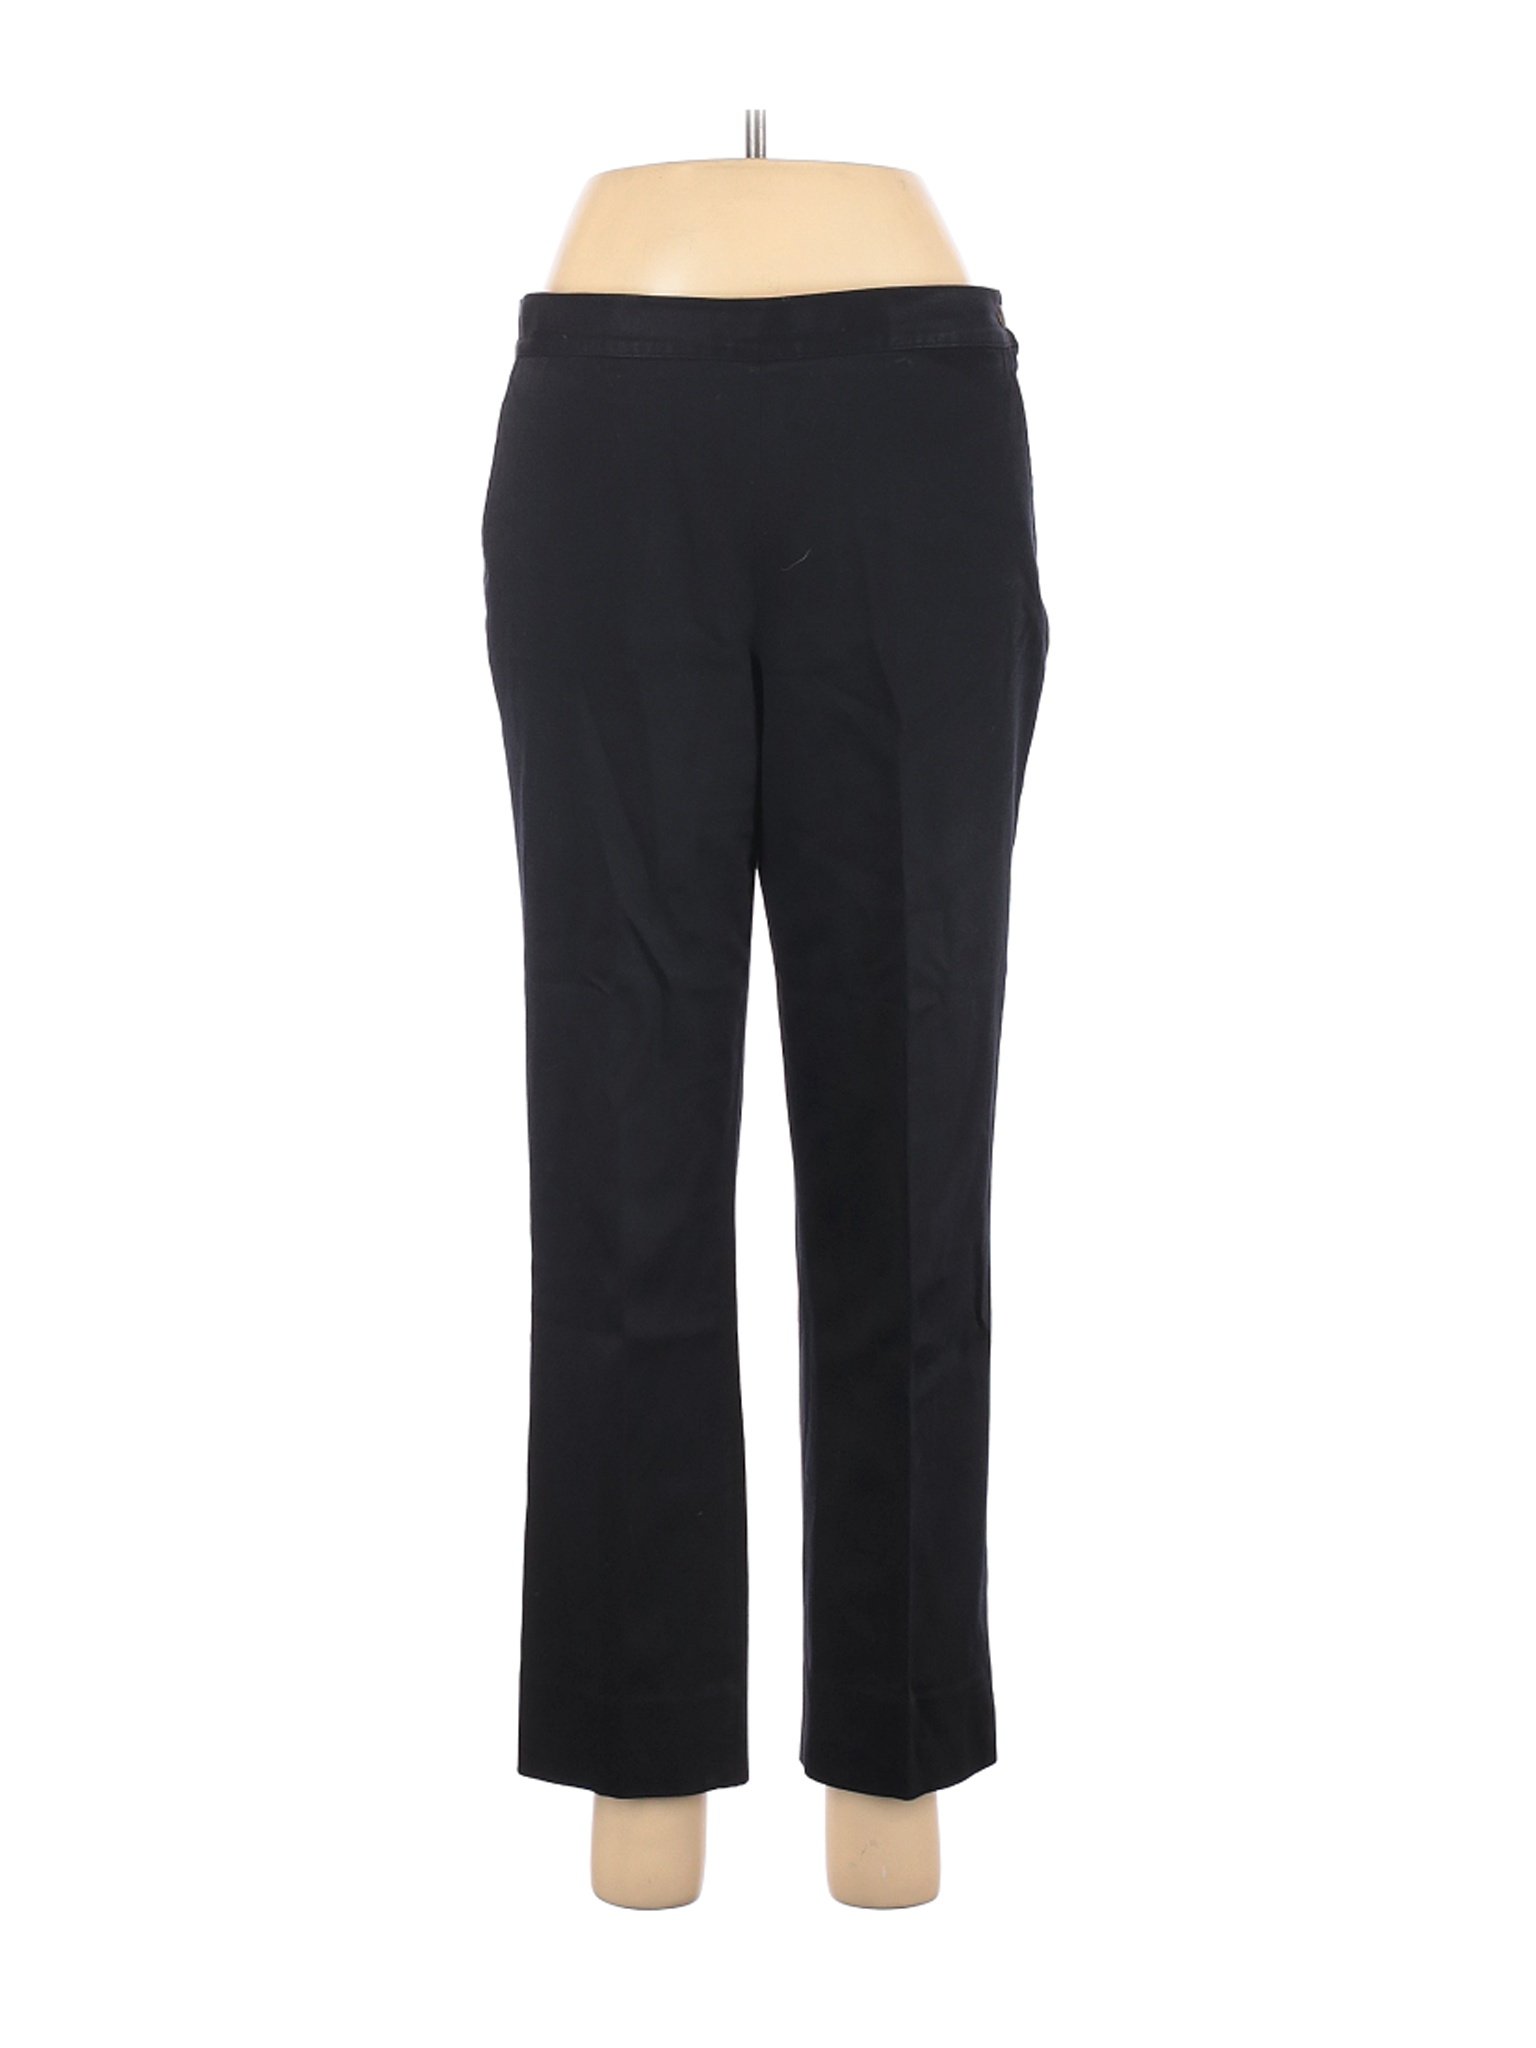 Lauren by Ralph Lauren Women Black Casual Pants 10 Petites | eBay